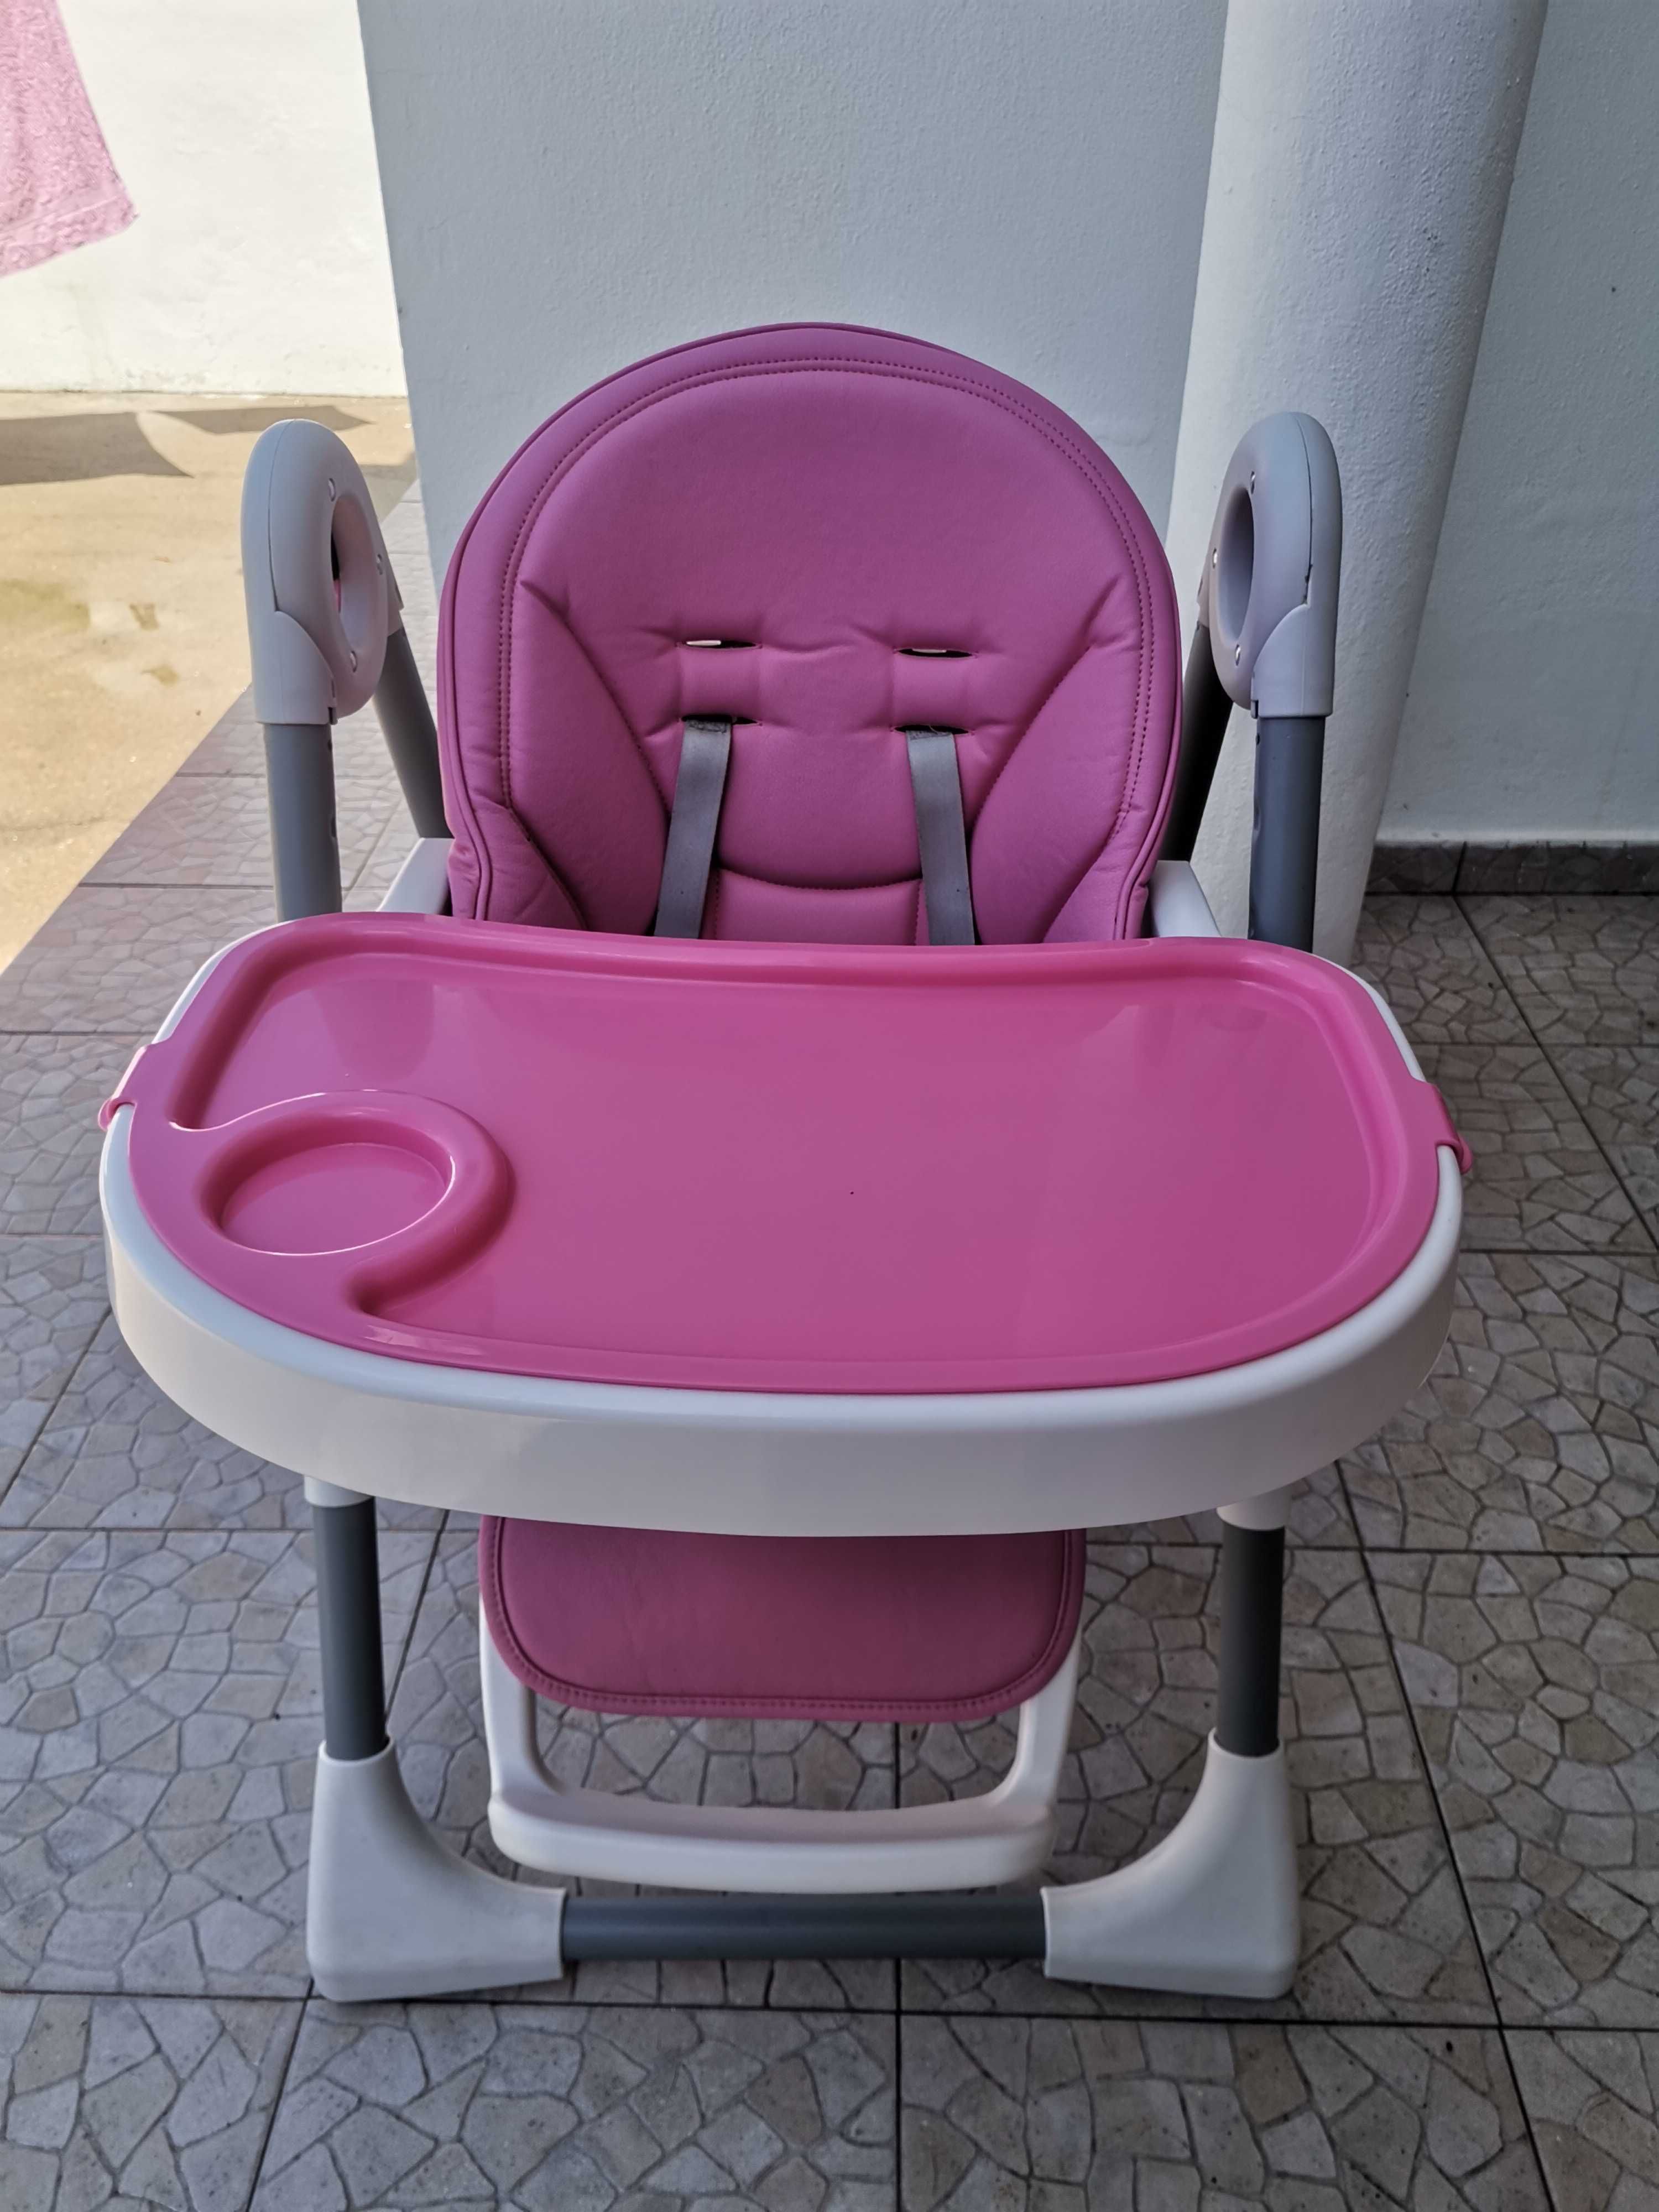 Cadeira de bebé em bom estado